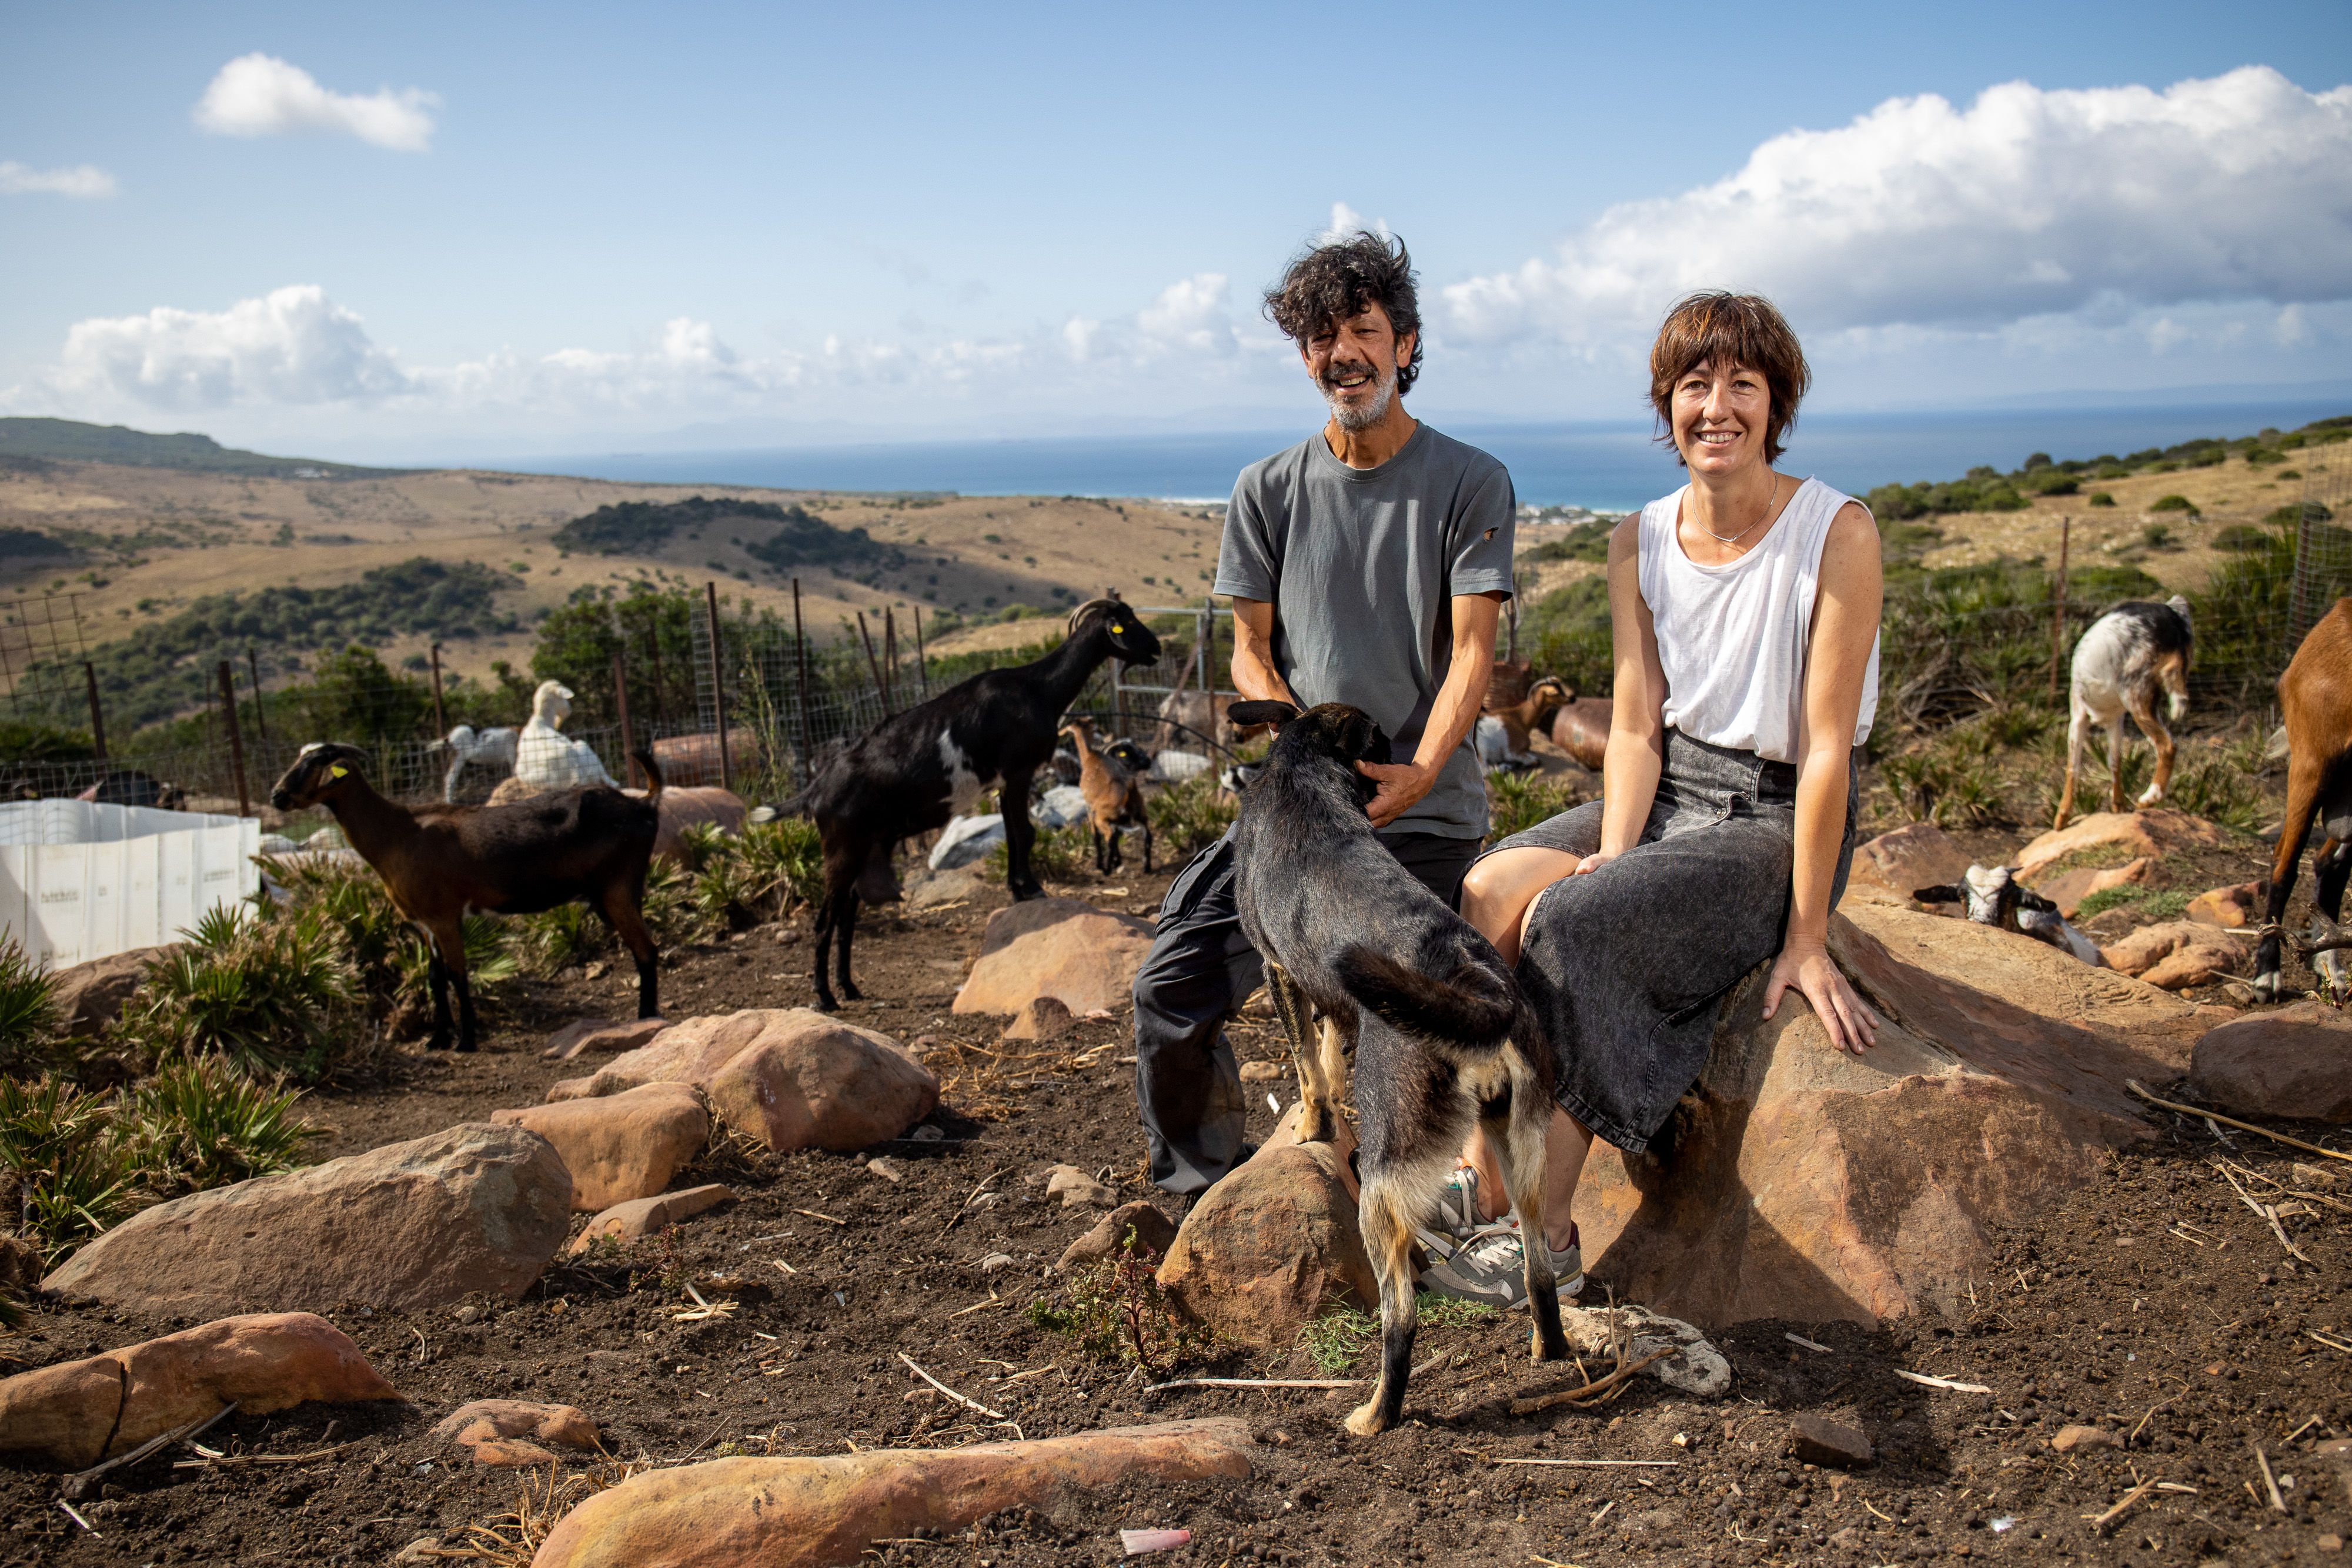 Mario y Lorena, junto a su rebaño de cabras payoyas, en la quesería El Cabrero, con la ensenada de Bolonia y el Norte de África al fondo.